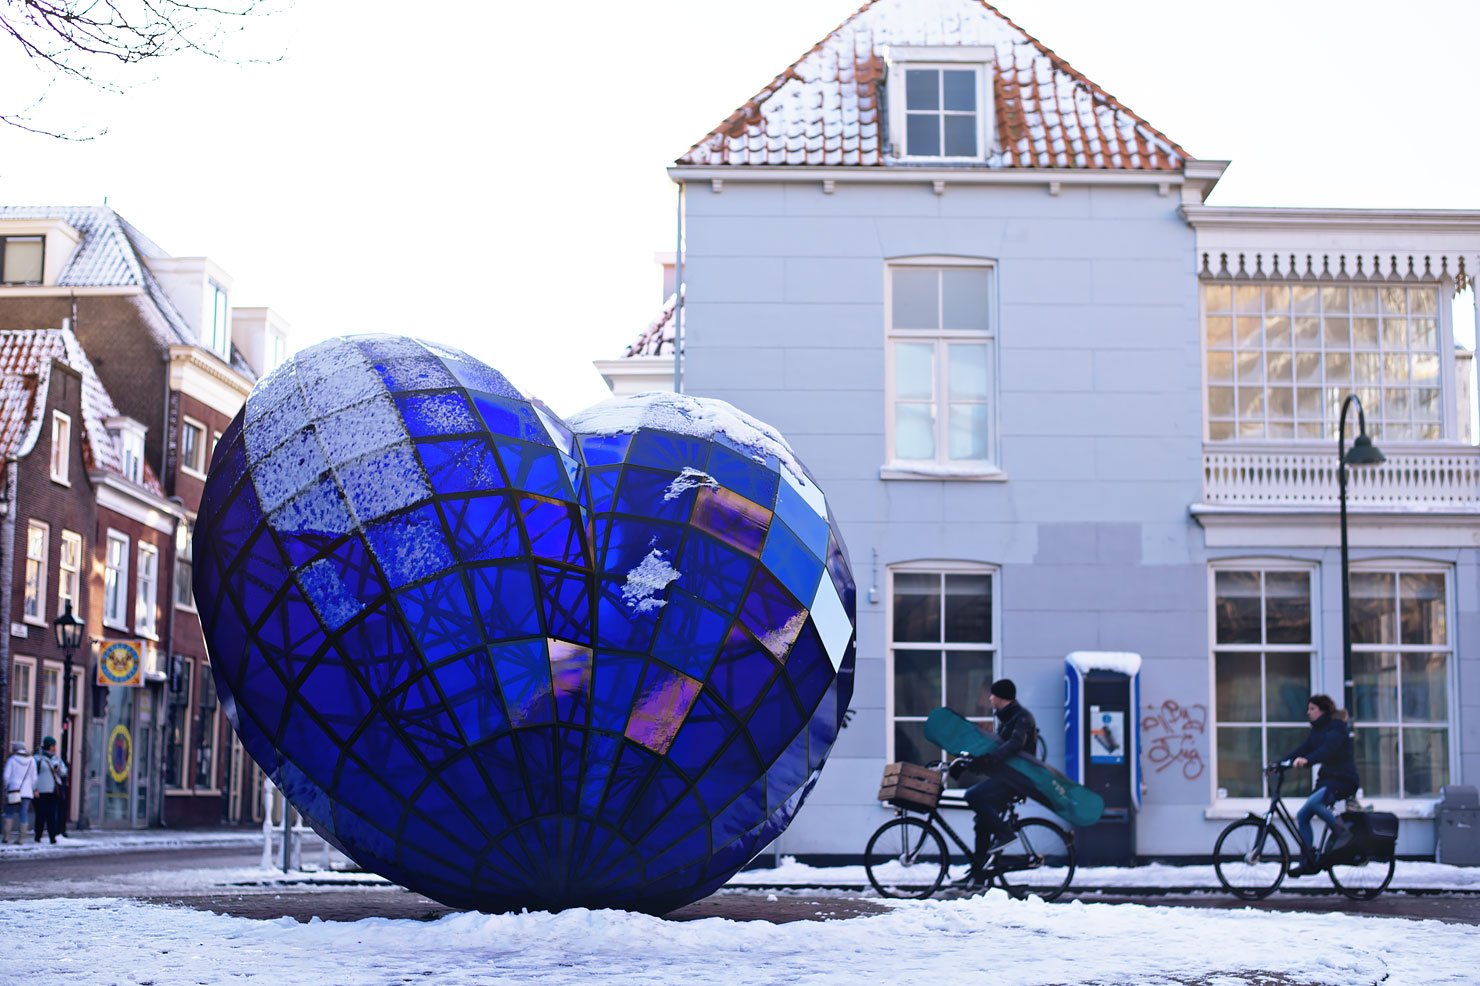 Het Blauwe Hart (The Blue Heart of Delft) by Marcel Smink in Delft, the Netherlands